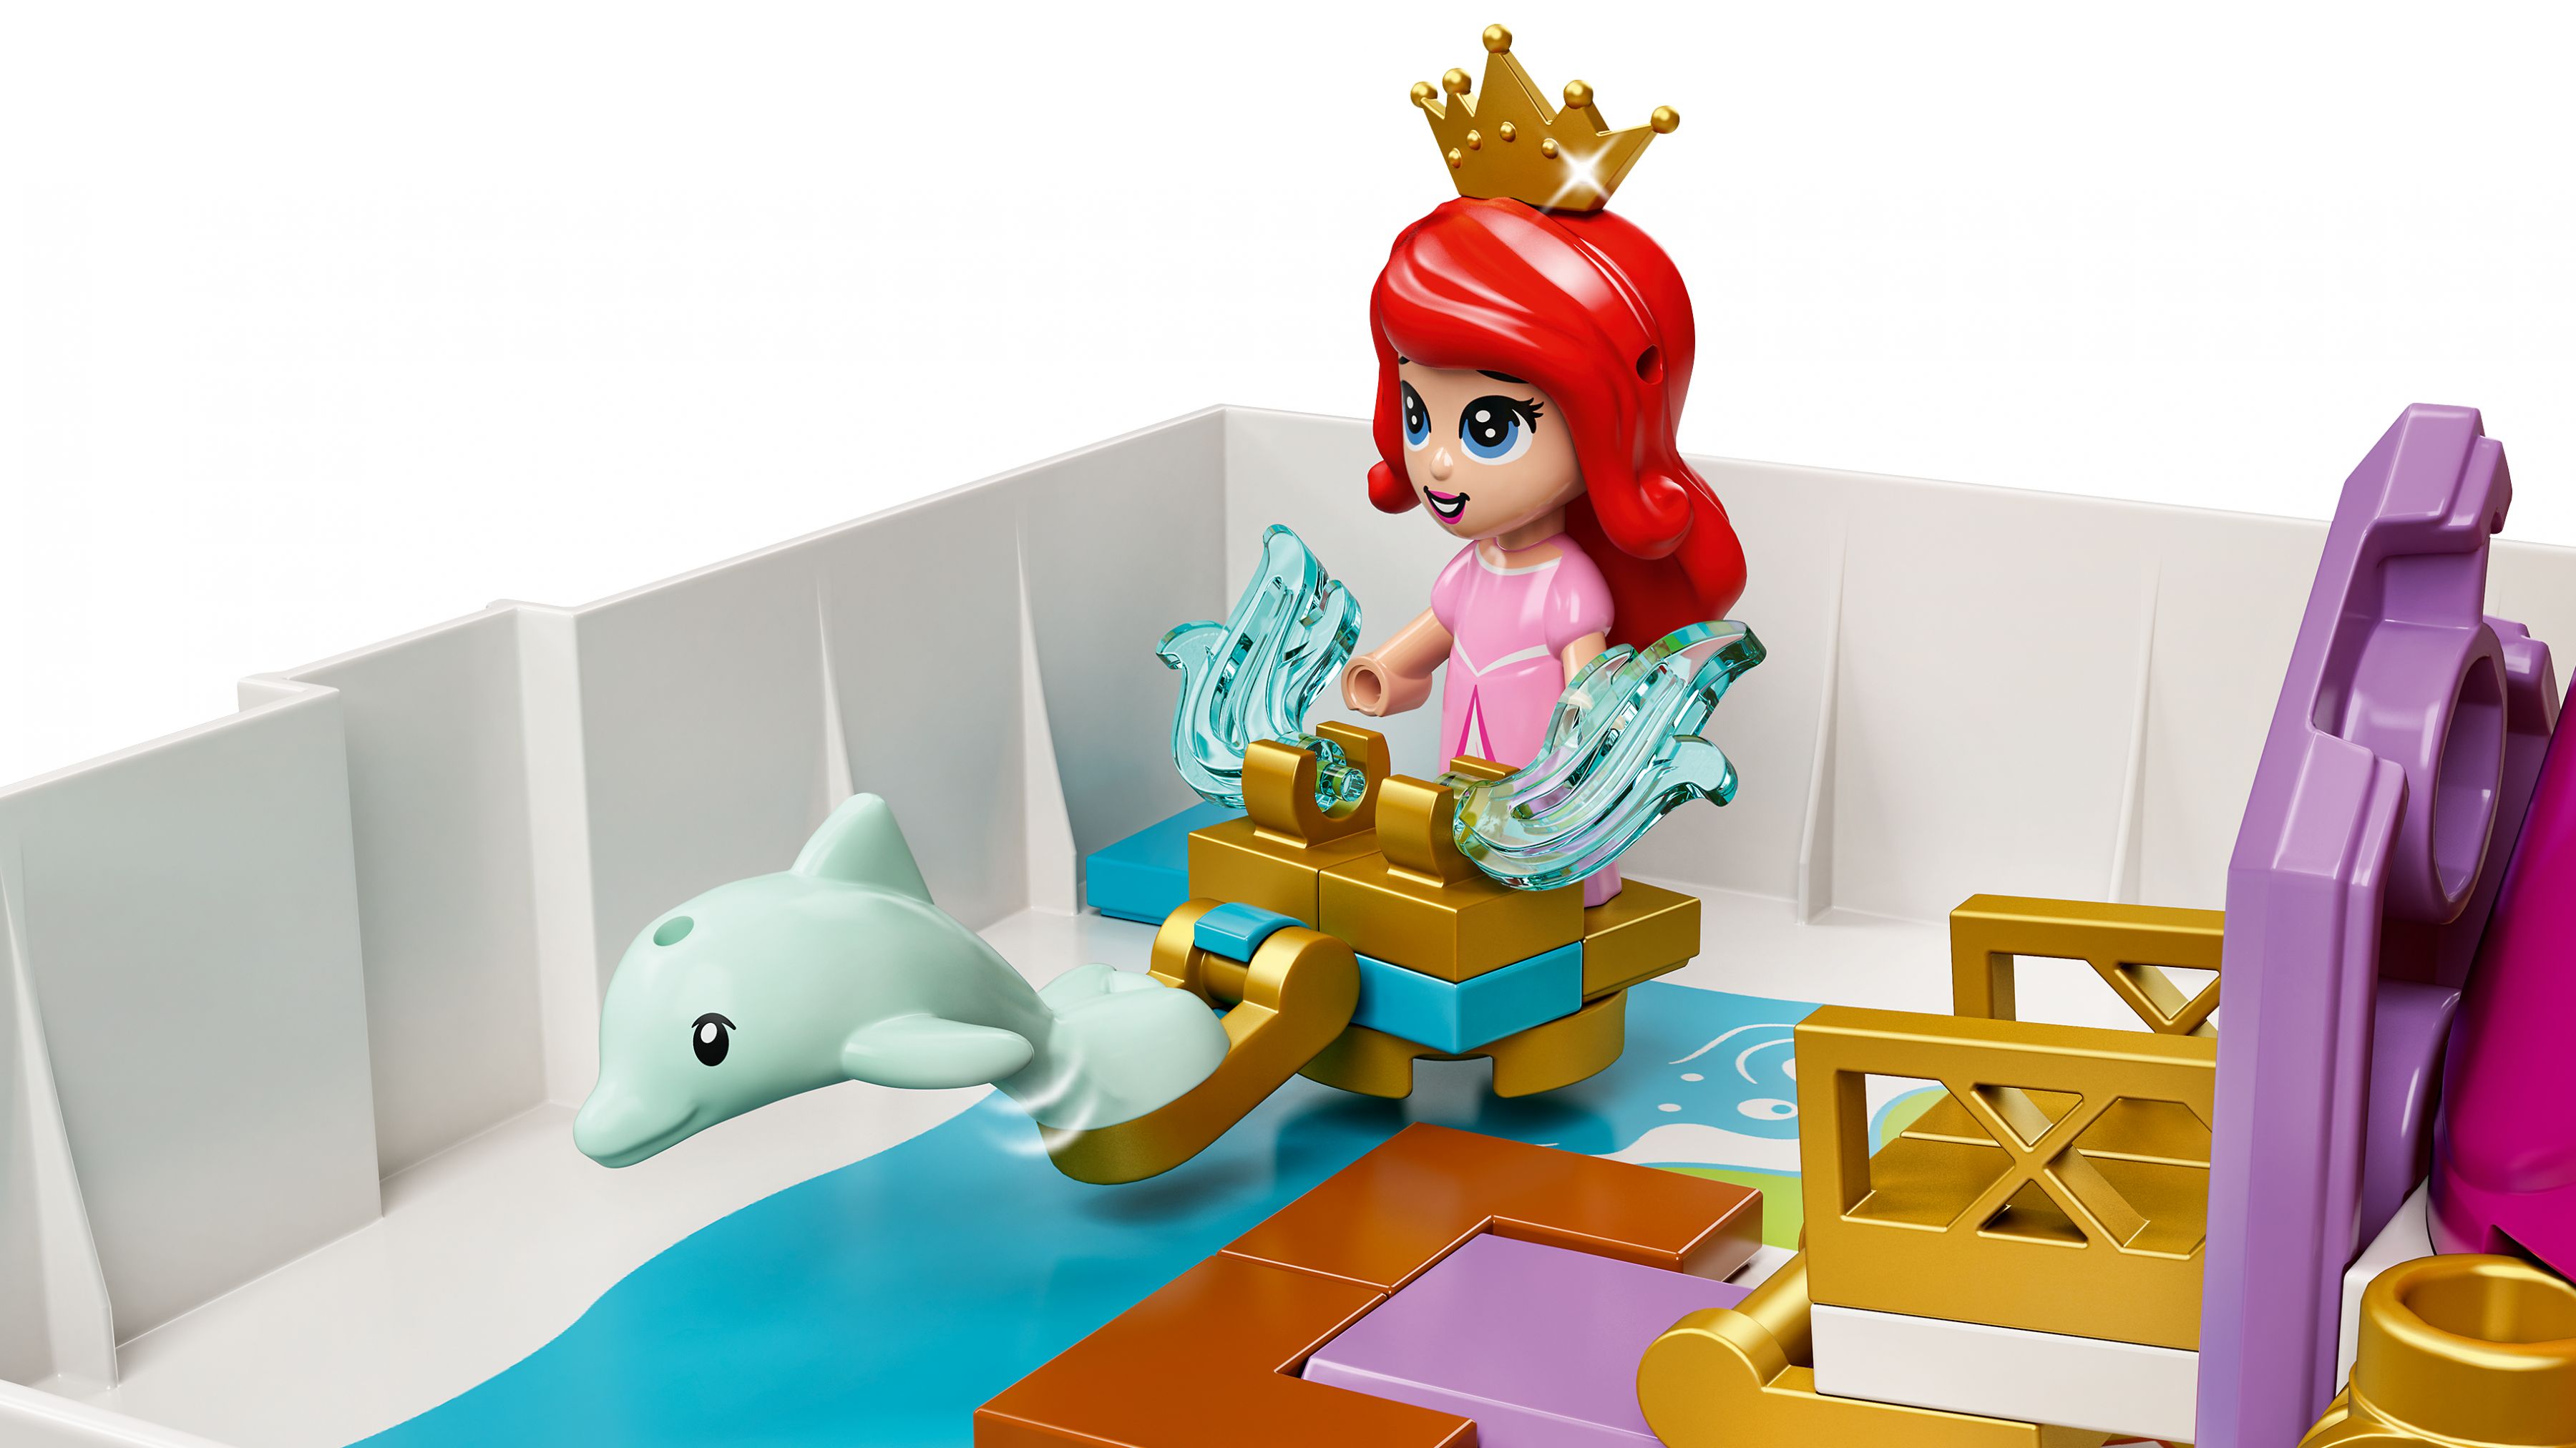 LEGO Disney 43193 Märchenbuch Abenteuer mit Arielle, Belle, Cinderella und Tiana LEGO_43193_web_sec05_nobg.jpg